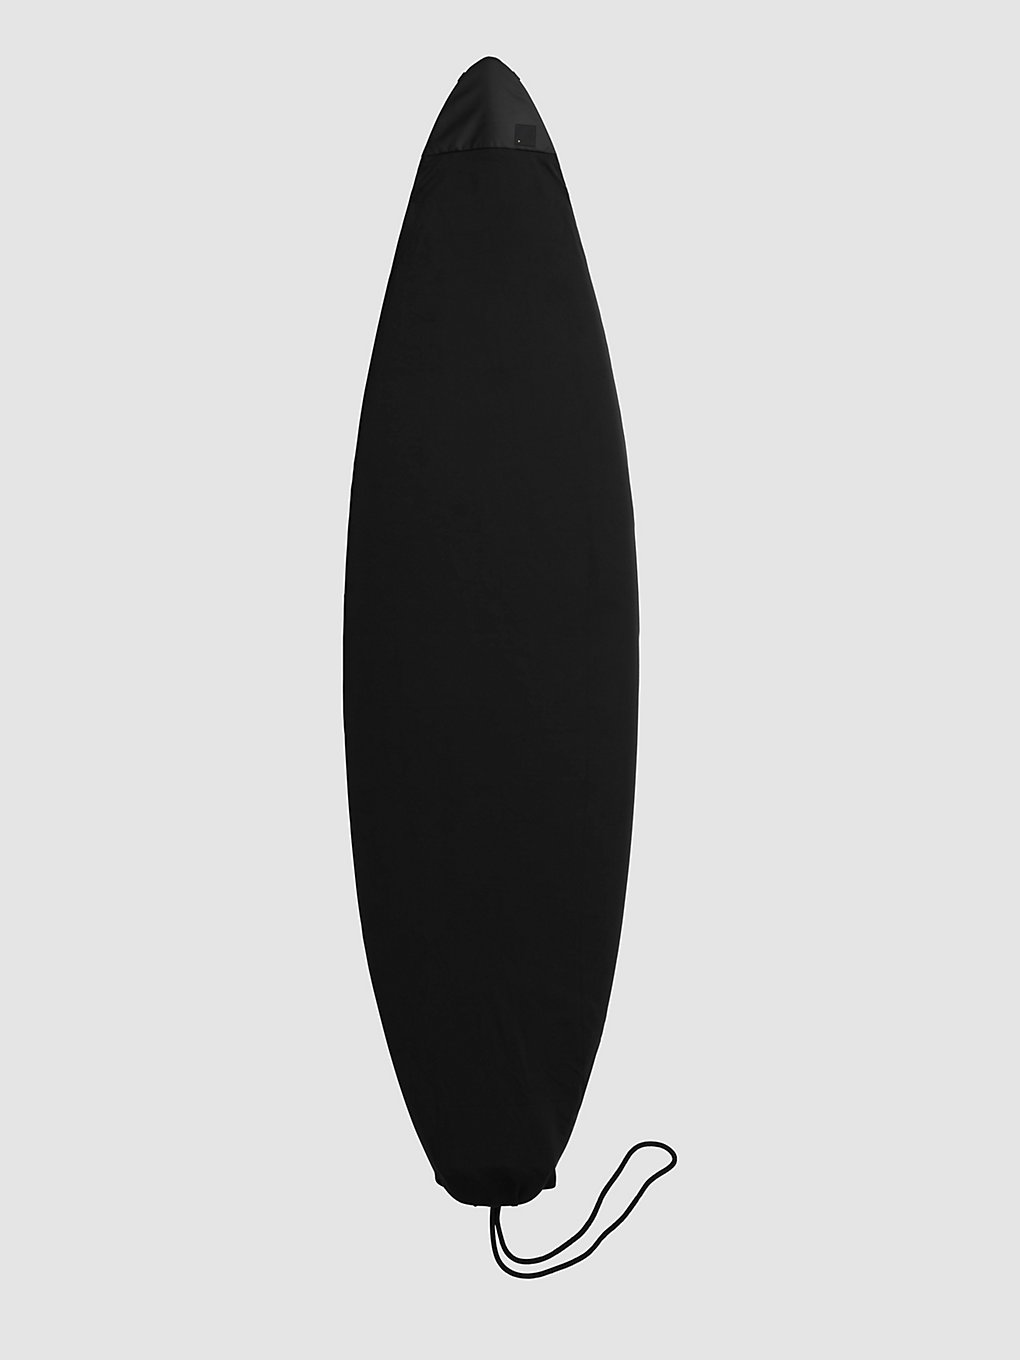 Db Surf Sock 6'0" Stab Ltd Surfboard Bag stab ltd kaufen